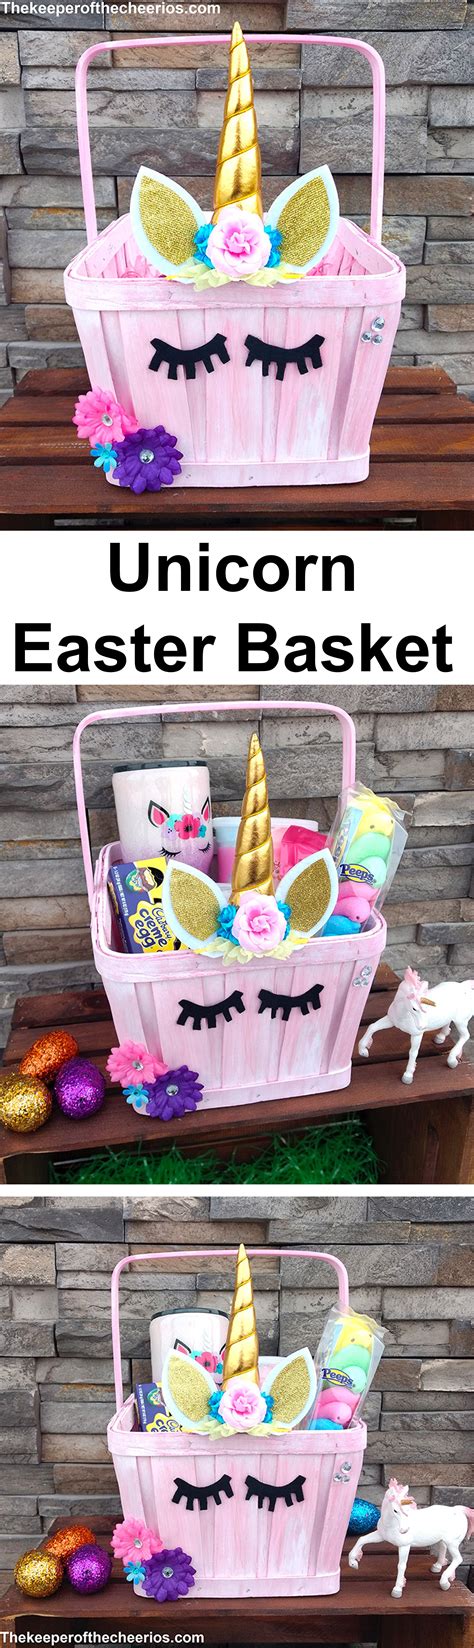 Unicorn Easter Basket Unicorn Easter Basket Holiday Crafts Easter